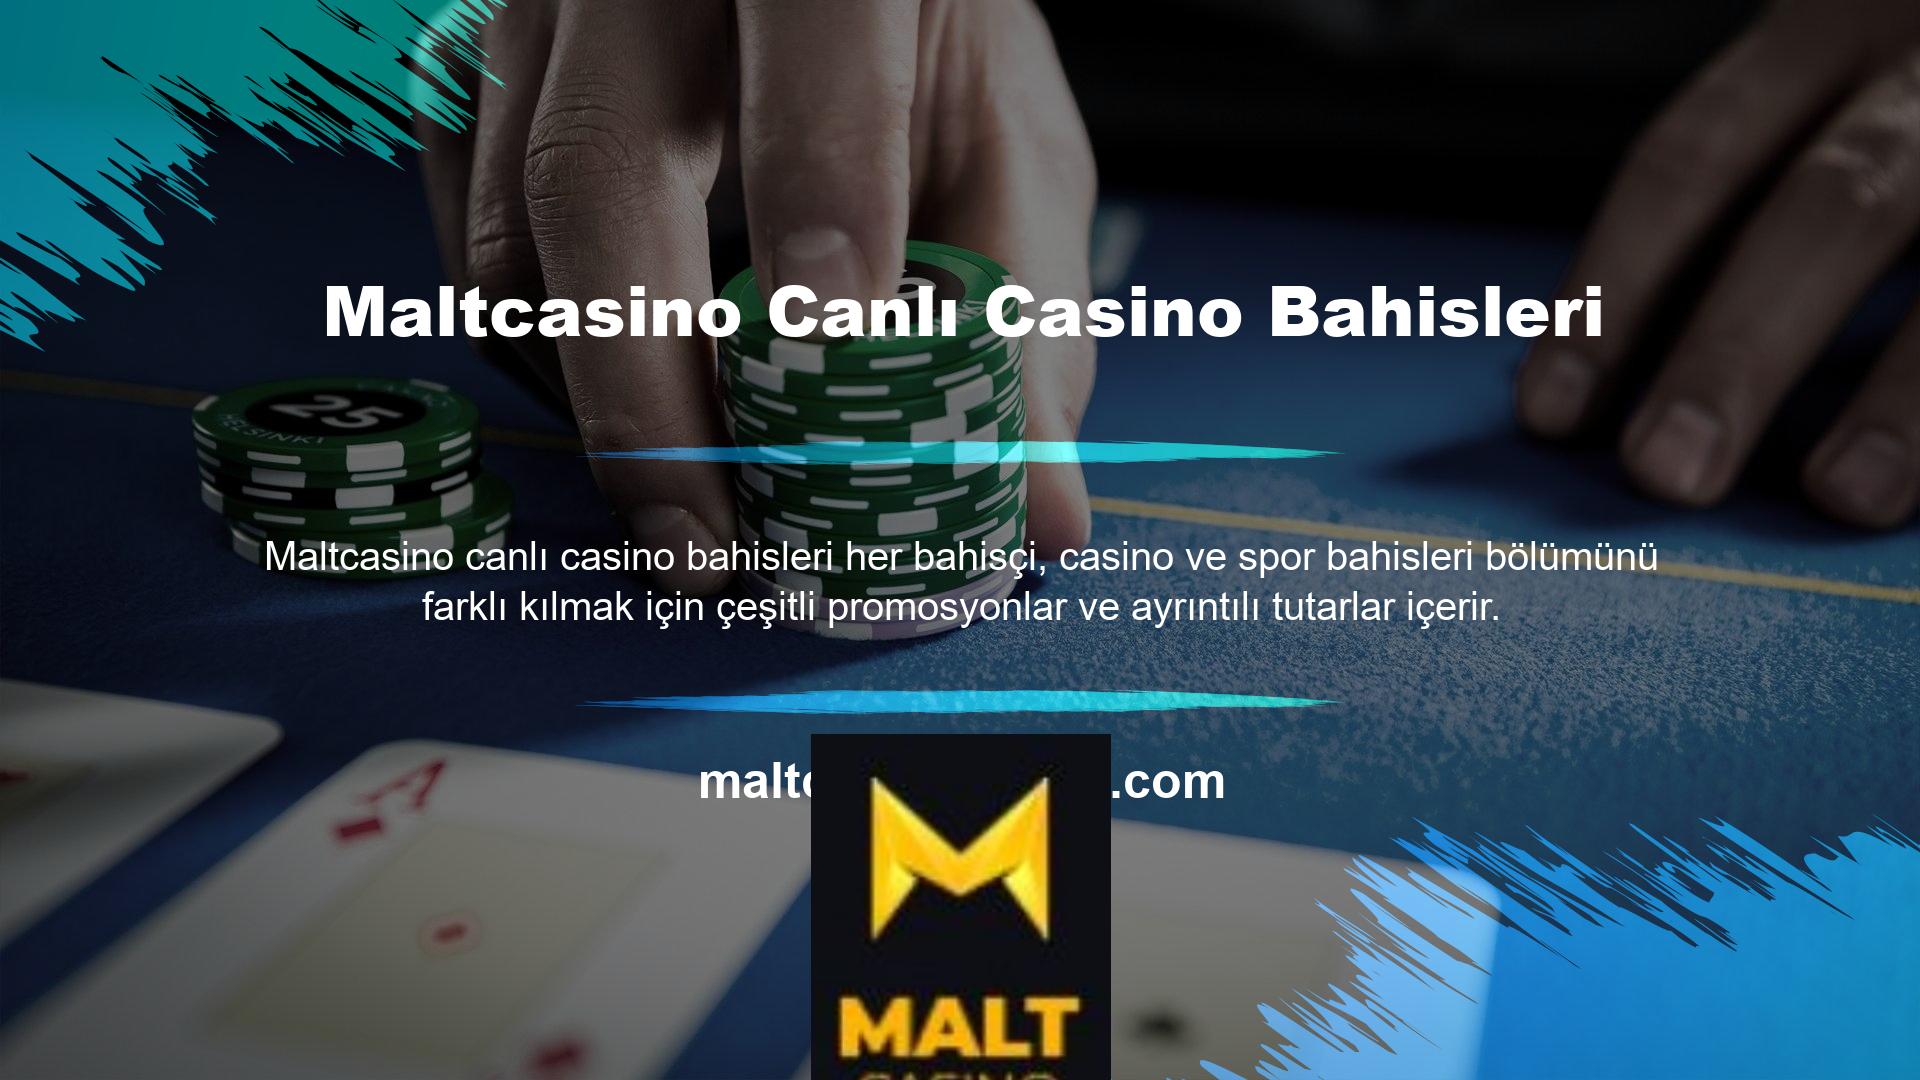 Bu arada Maltcasino gibi bazı şirketler casinolarını üç farklı eyaletle paylaşıyor